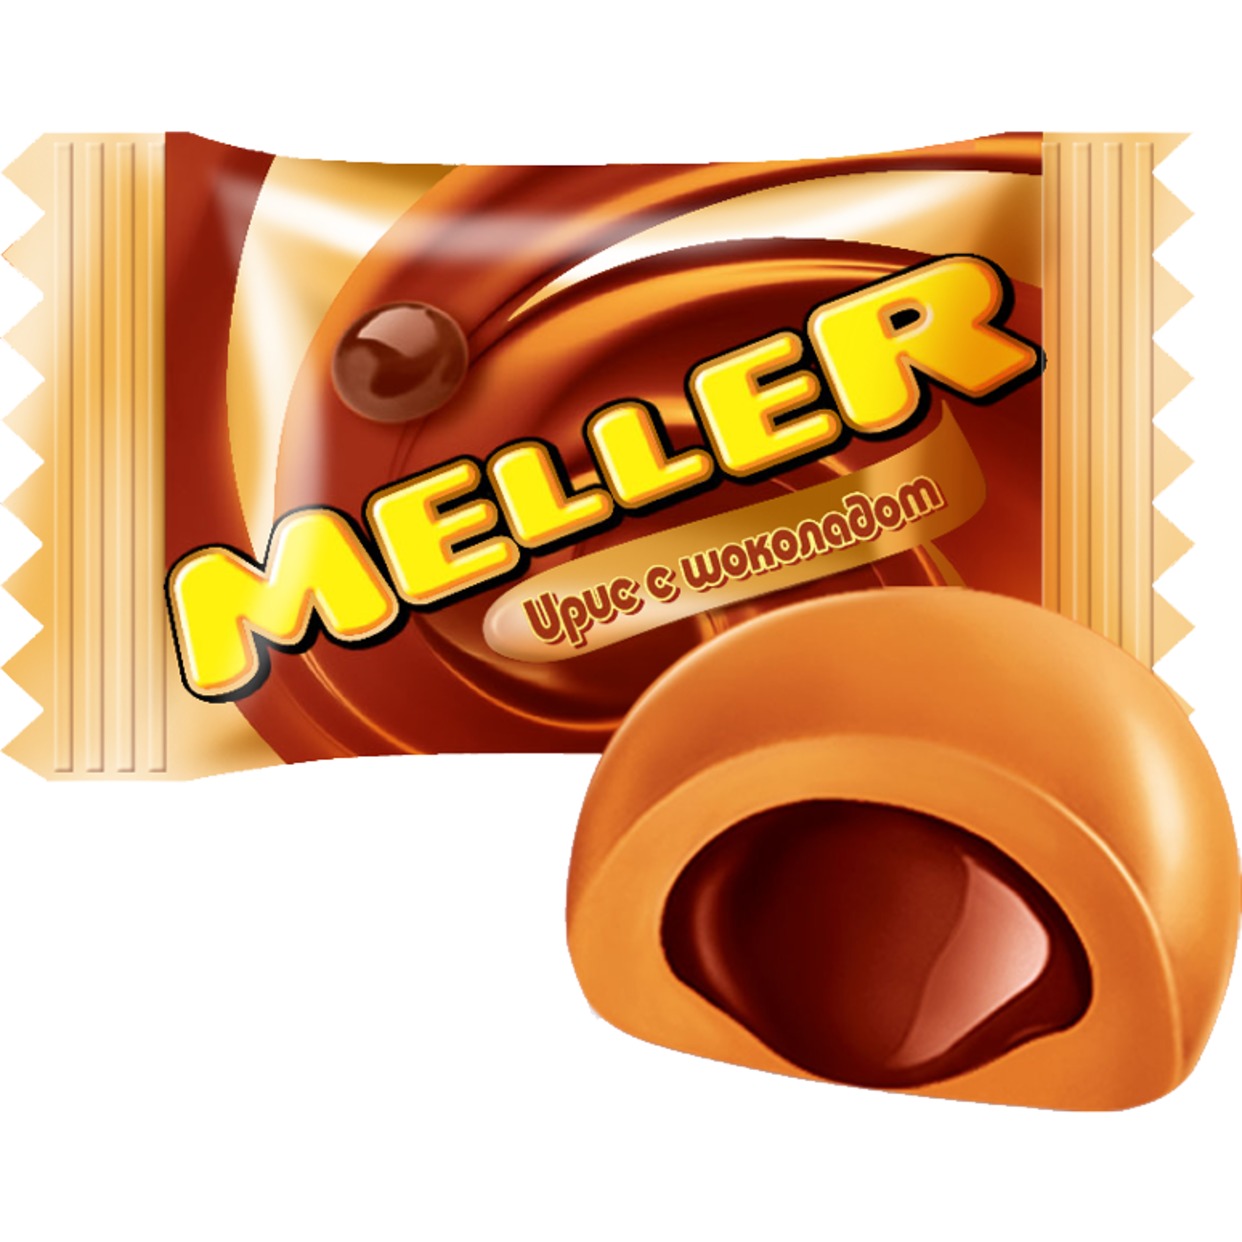 MELLER Ирис с шоколадом 1кг по акции в Пятерочке